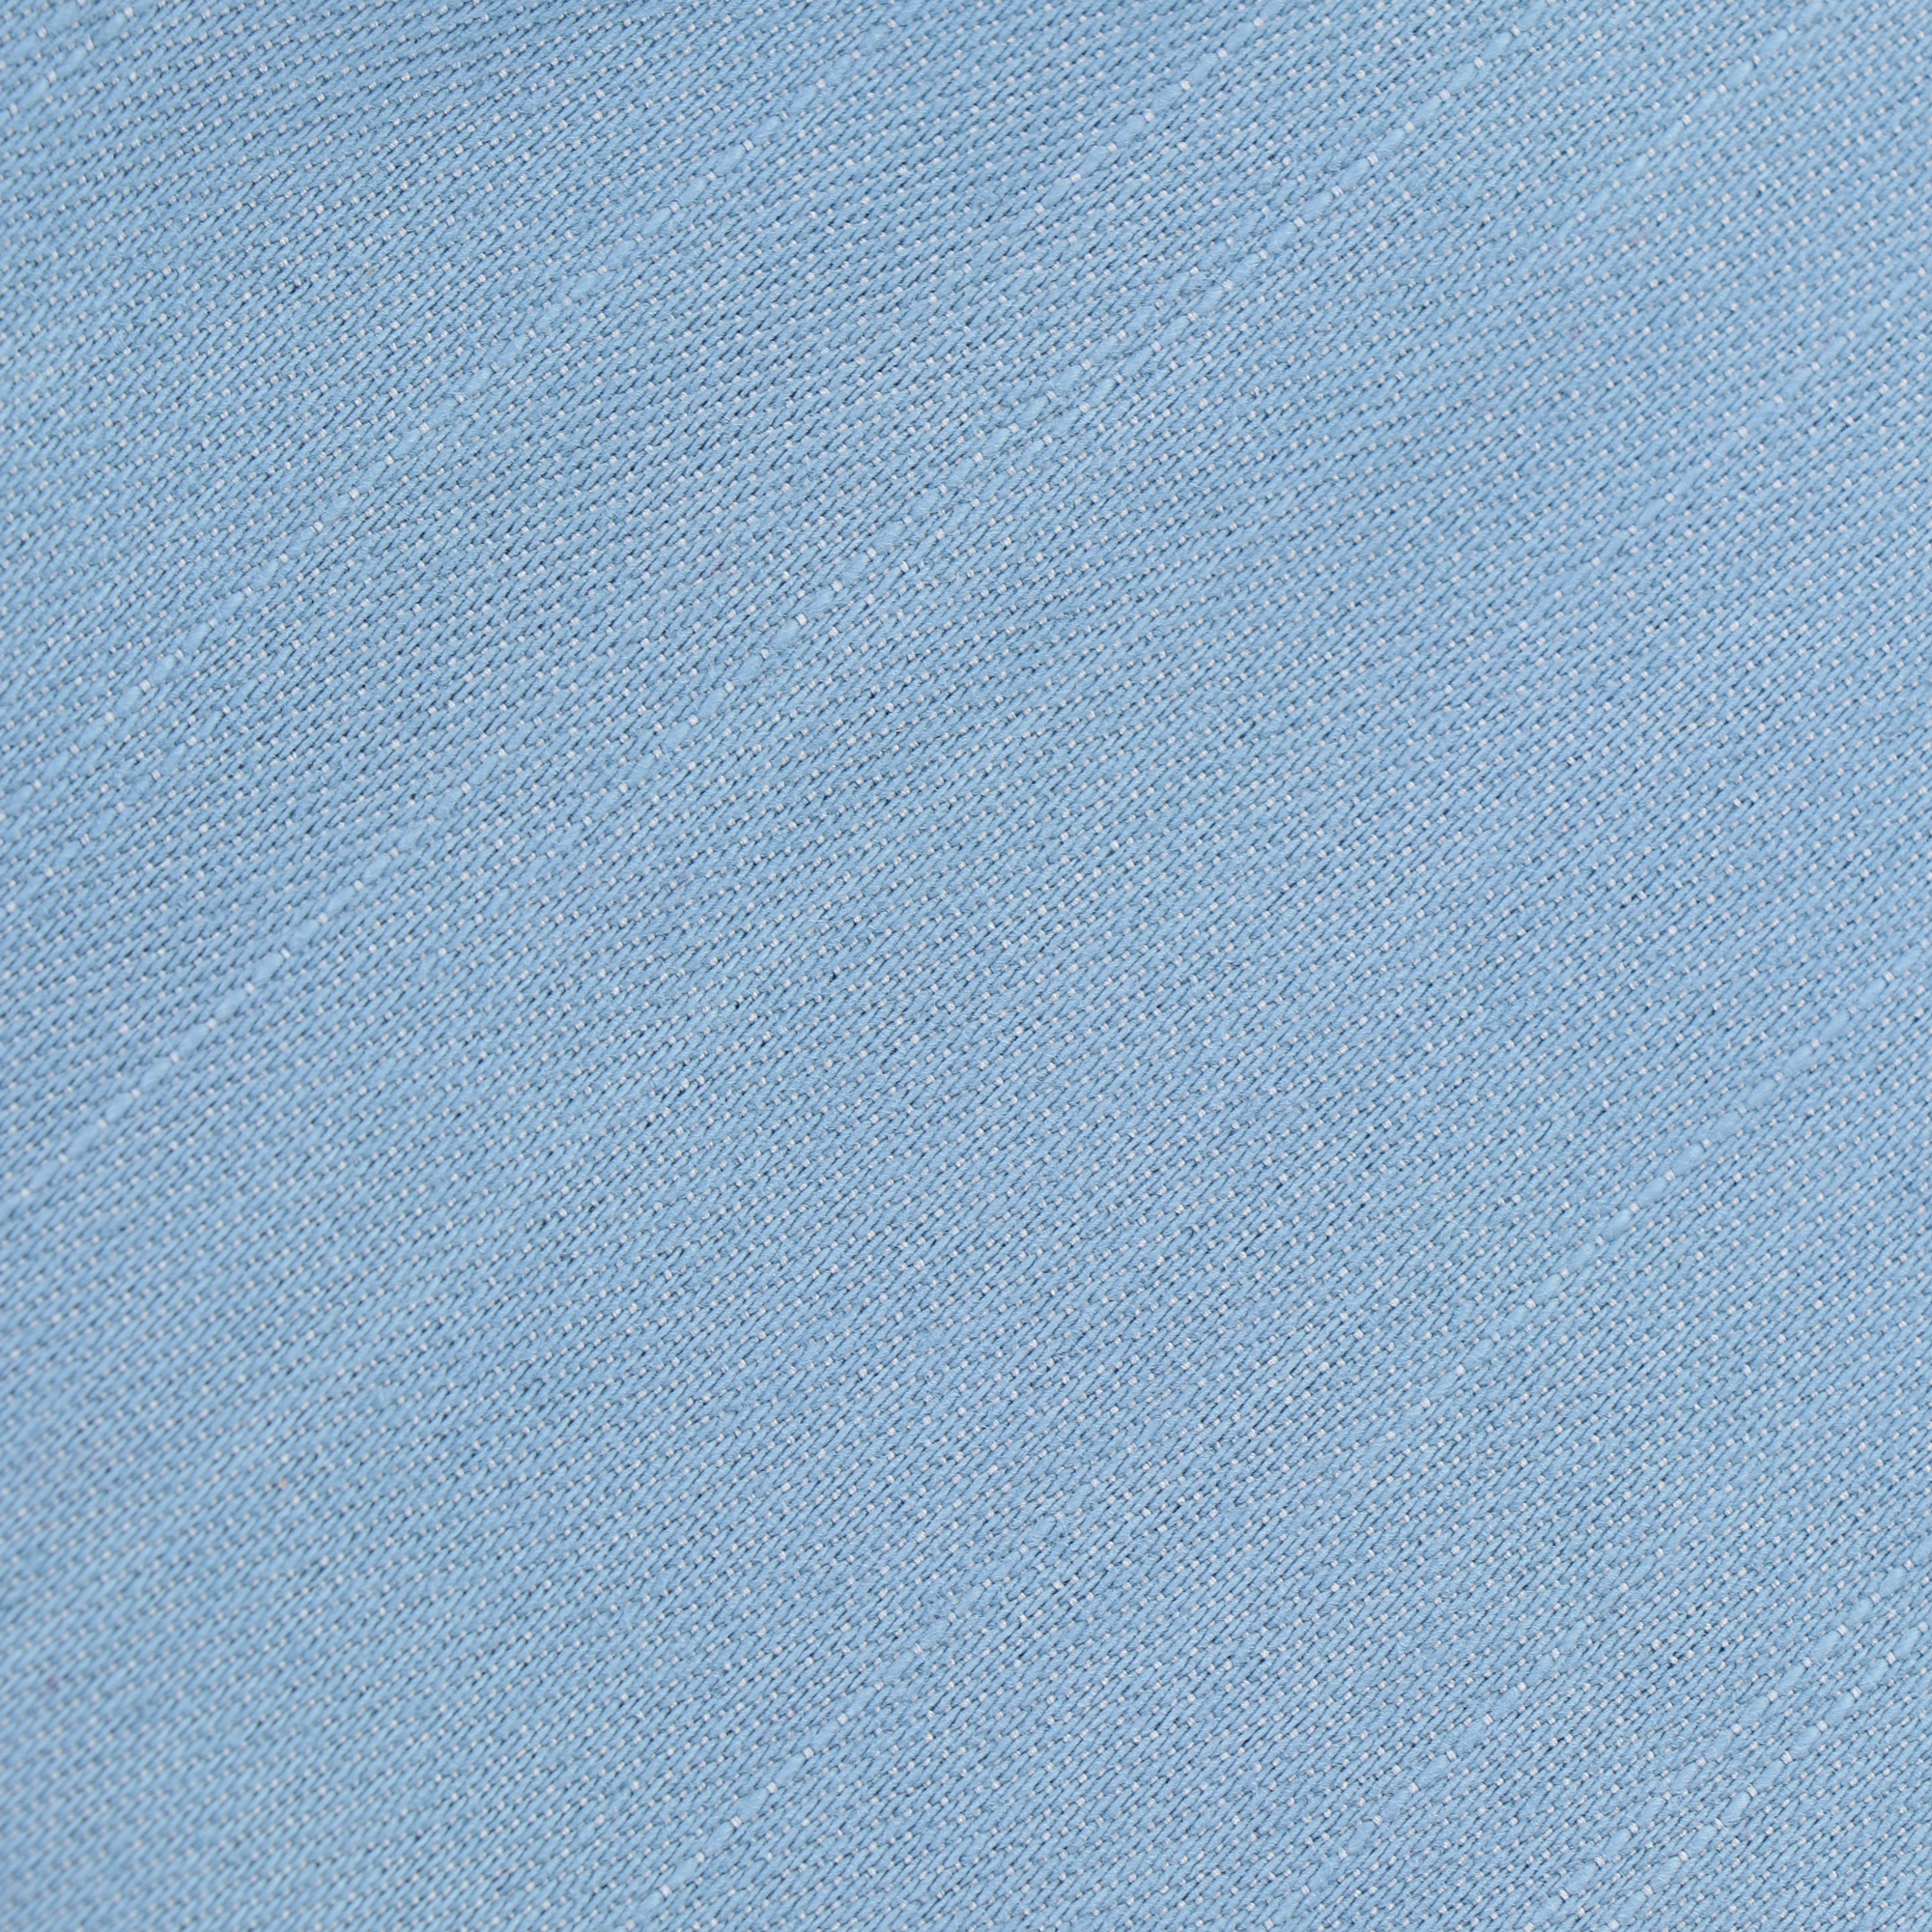 Шорты женские Joyord голубые XL, цвет голубой, размер XL - фото 3